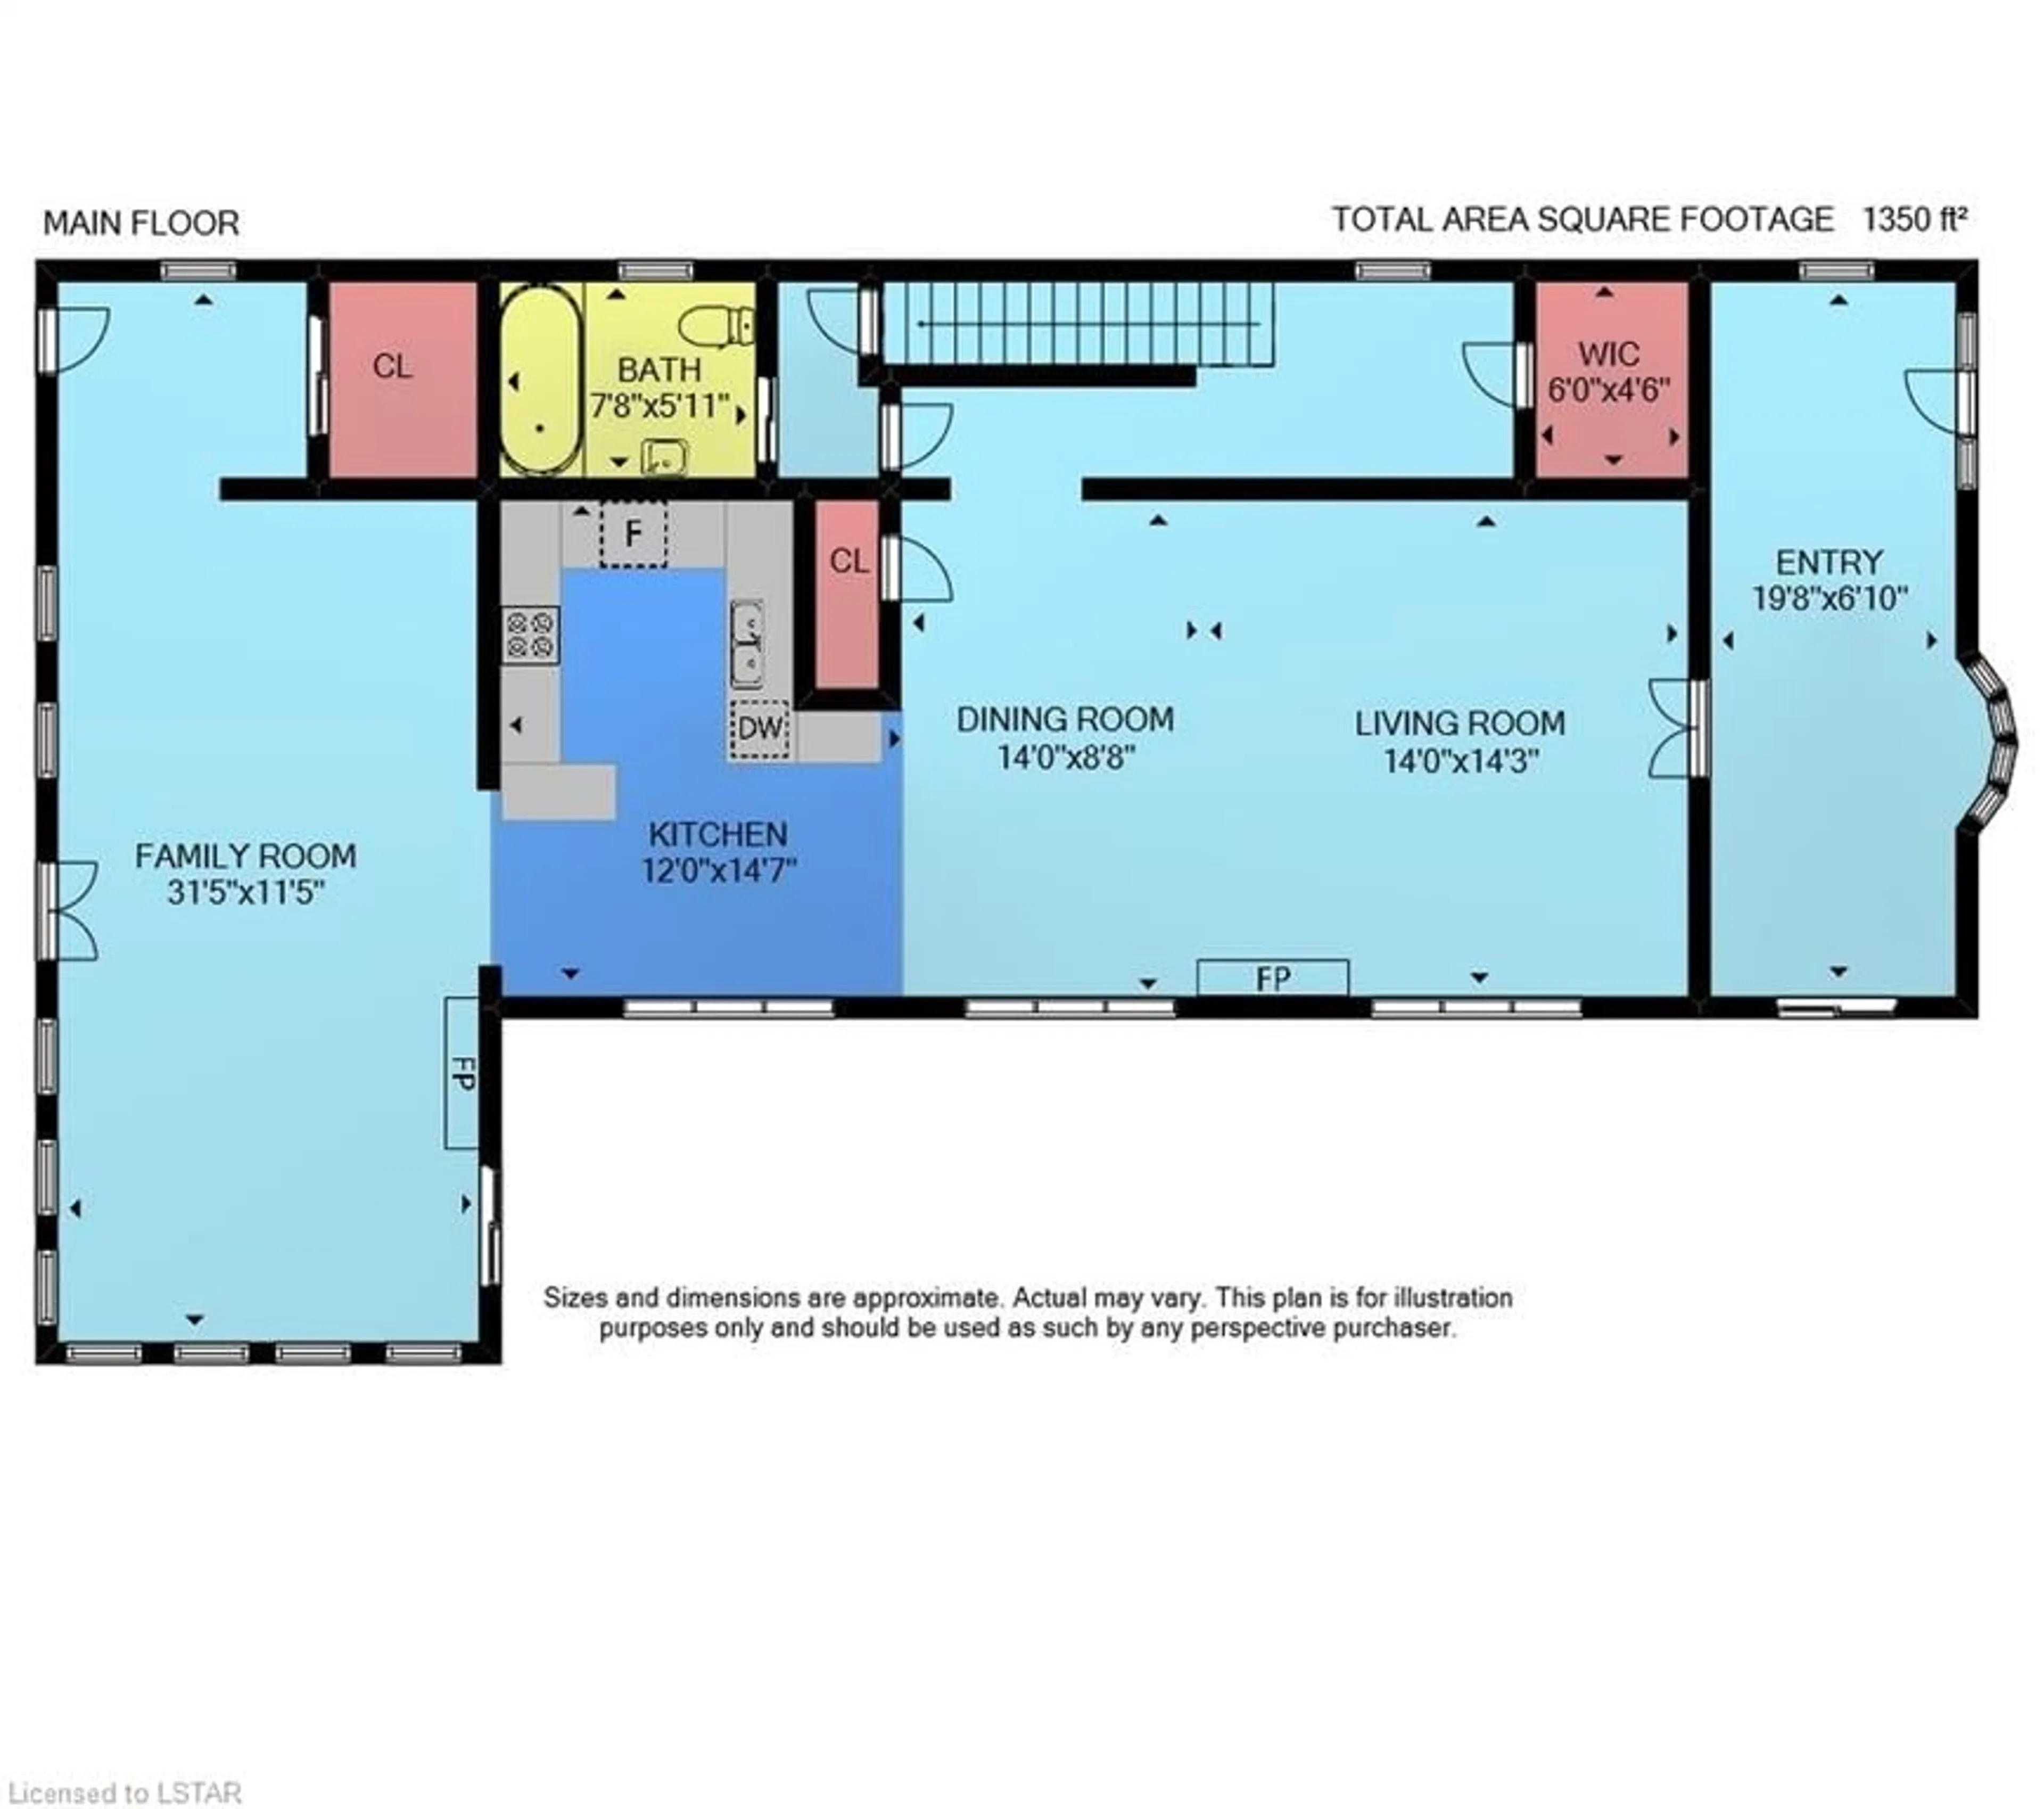 Floor plan for 434825 Zorra Line, Beachville Ontario N0J 1A0